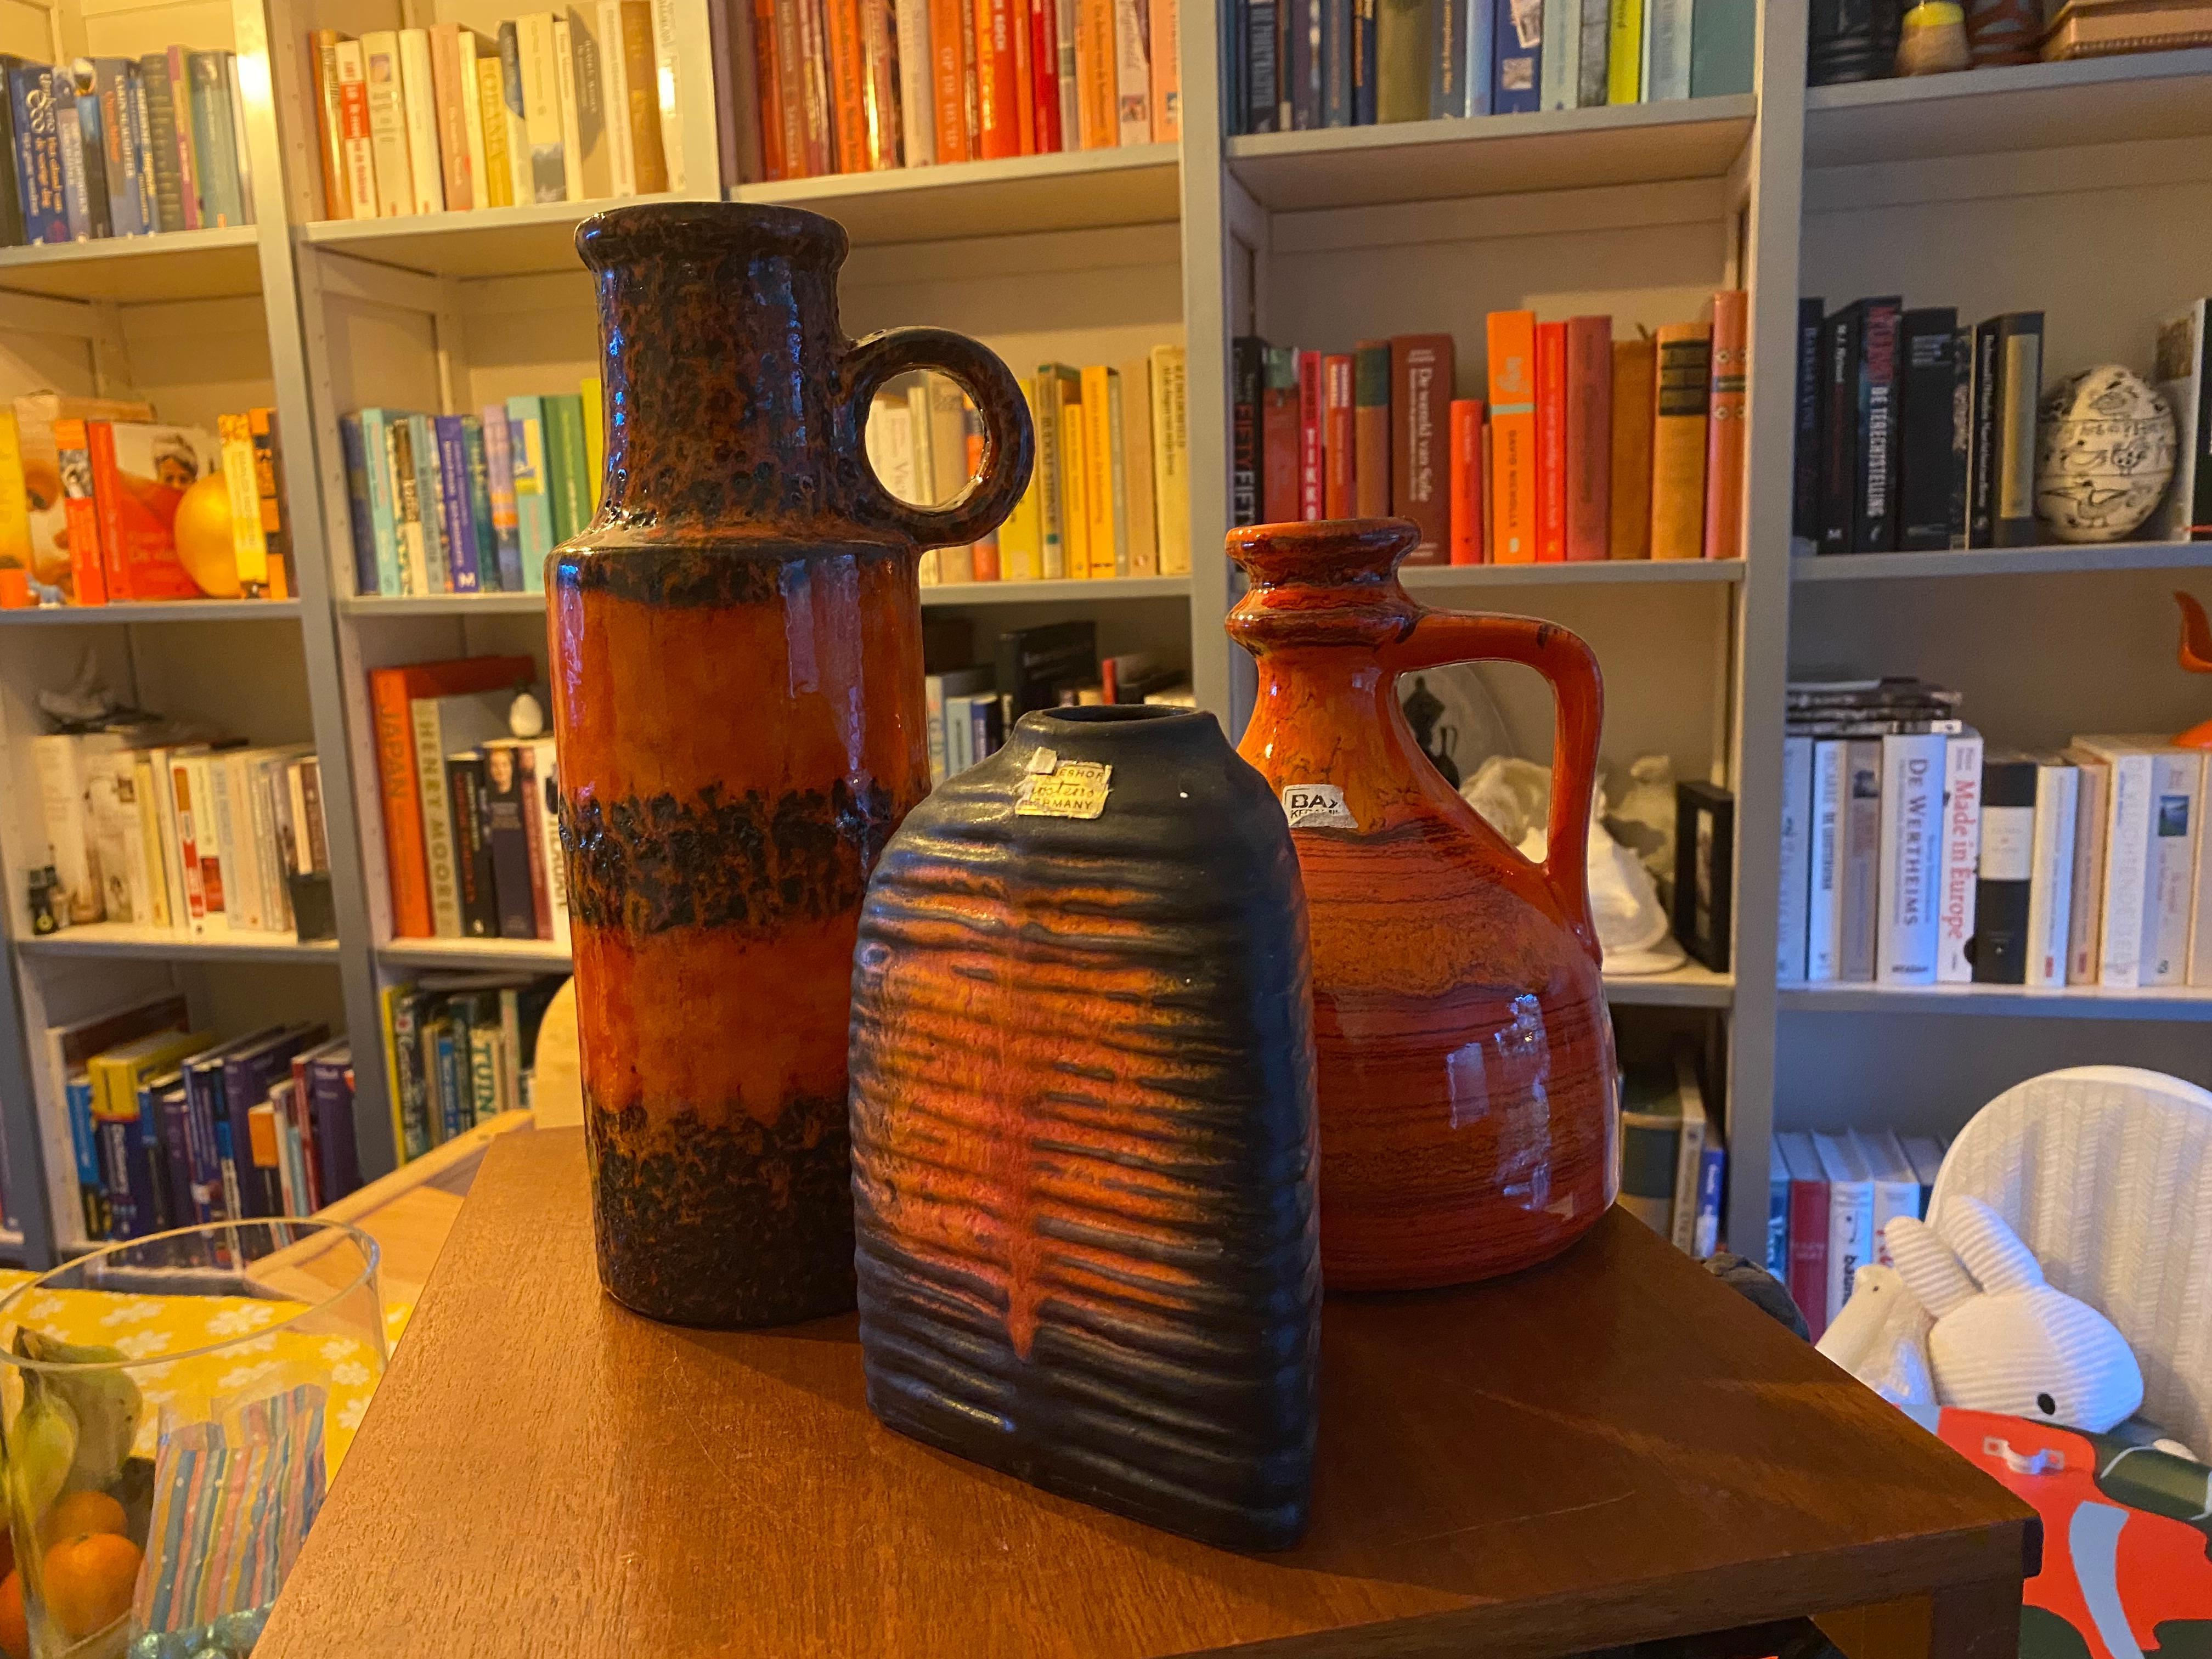 Tre vasi dai colori vivaci.
Il vaso più alto è di Scheurich Keramik e l'altezza è di 28 cm.

Il vaso arancione è di Bay Keramik e la sua altezza è di 20 cm.

Il vaso a triangolo è di Carstens Tonnieshof Keramik e misura 17 cm.